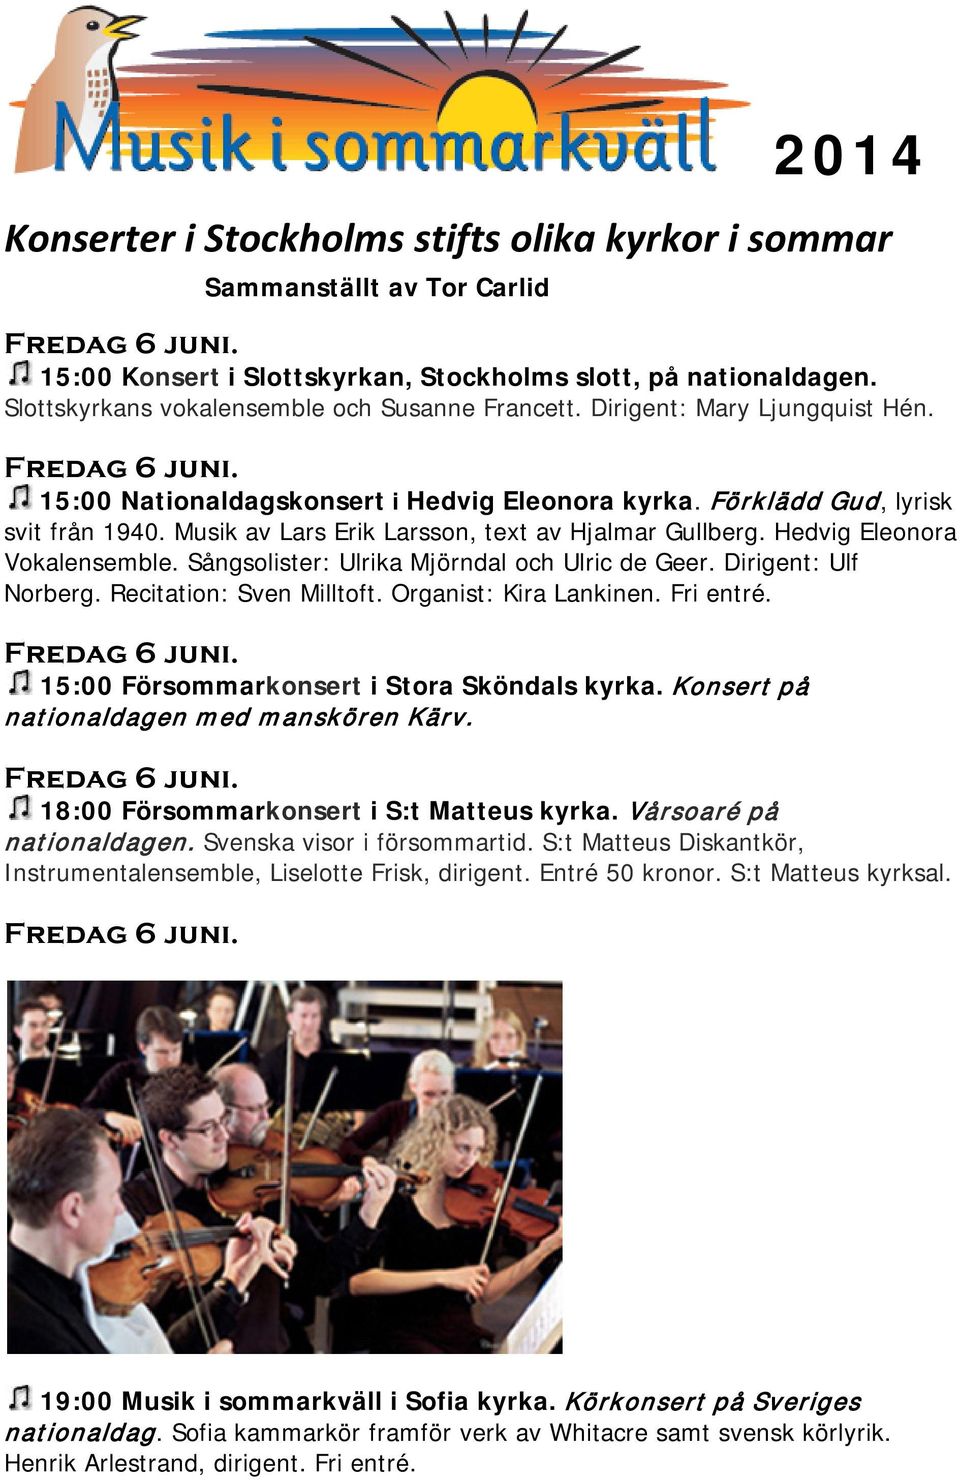 Konserter i Stockholms stifts olika kyrkor i sommar - PDF Gratis nedladdning